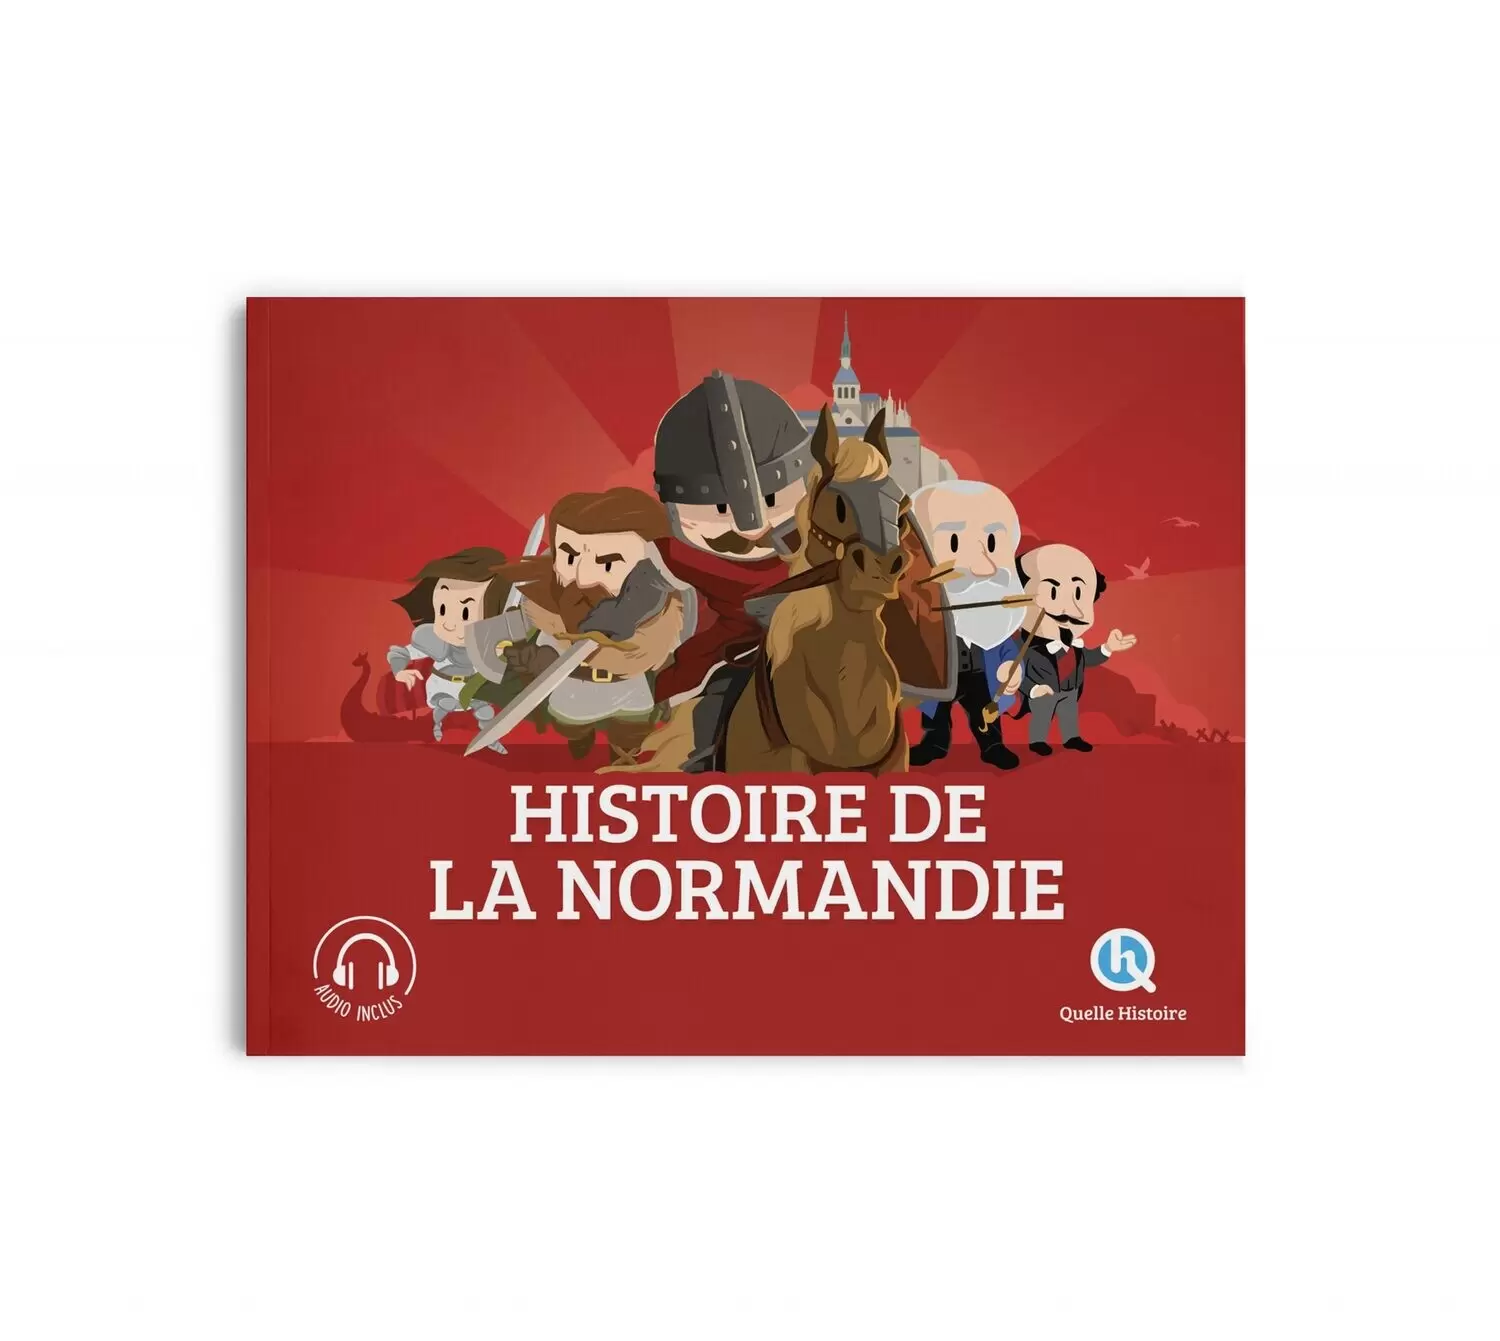 Quelle Histoire - Histoire de la Normandie